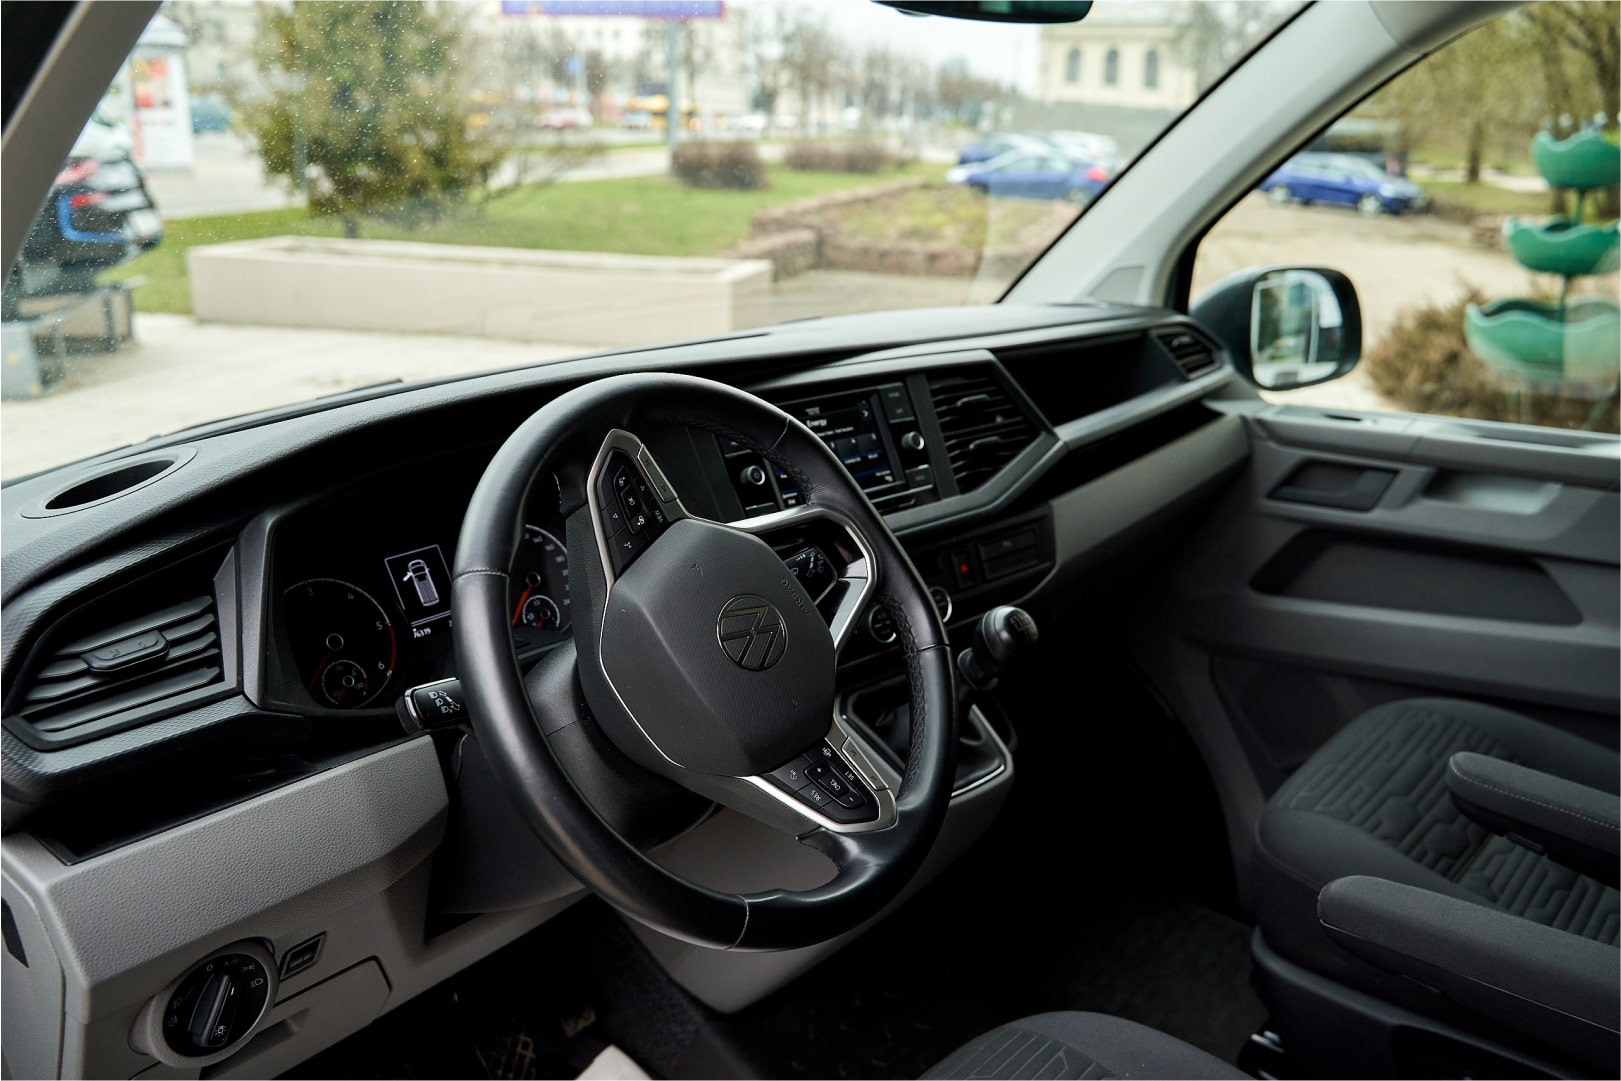 Аренда  Volkswagen Caravelle T6.1 Trendline 8+1 Long  7 класса 2021 года в городе Минск от 92 $/сутки,  двигатель: ДТ , объем 2.0 TDI литров, КАСКО (Мультидрайв), без водителя, вид 5 - West Group